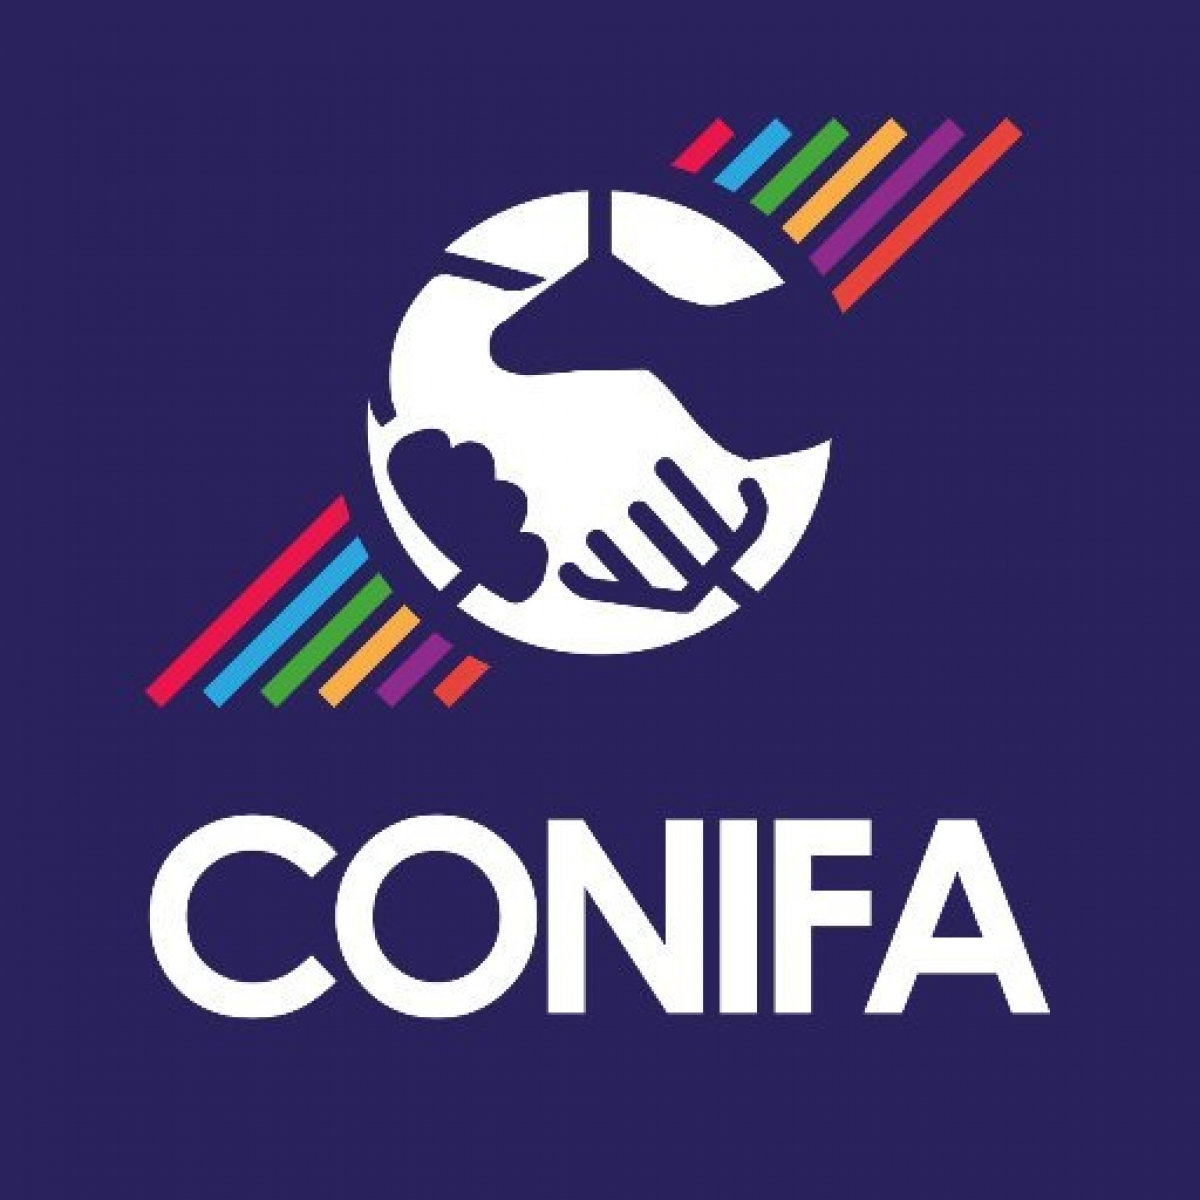 Чемпионат мира CONIFA 2020 пройдет в Северной Македонии